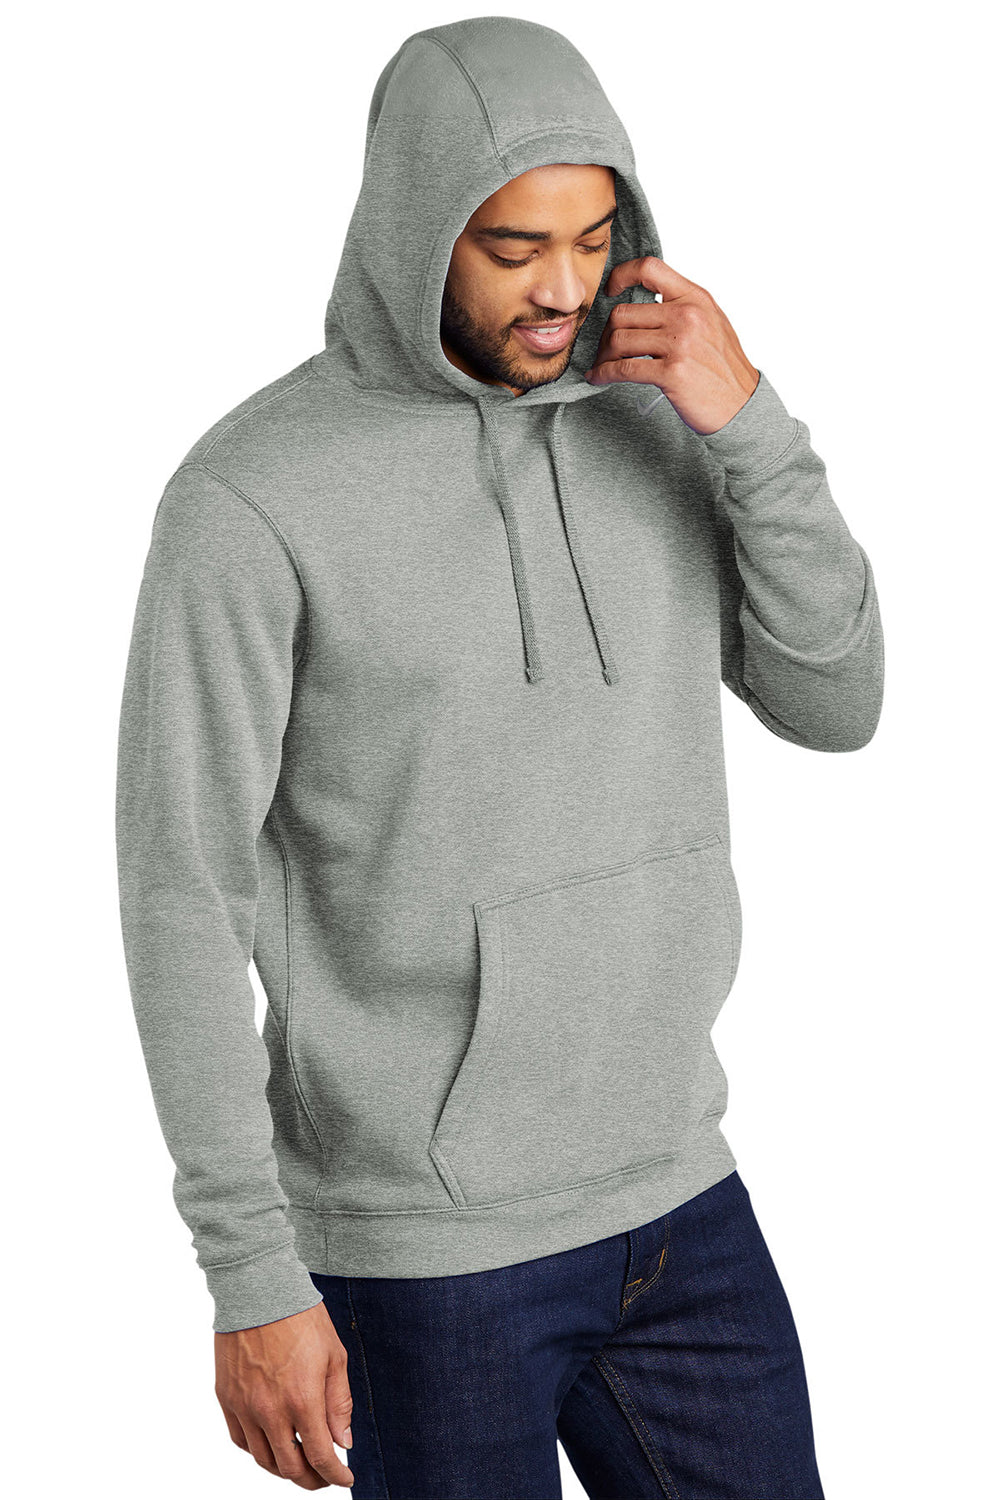 Nike CJ1611 Mens Club Fleece Hooded Sweatshirt Hoodie Heather Dark Grey Model 3Q